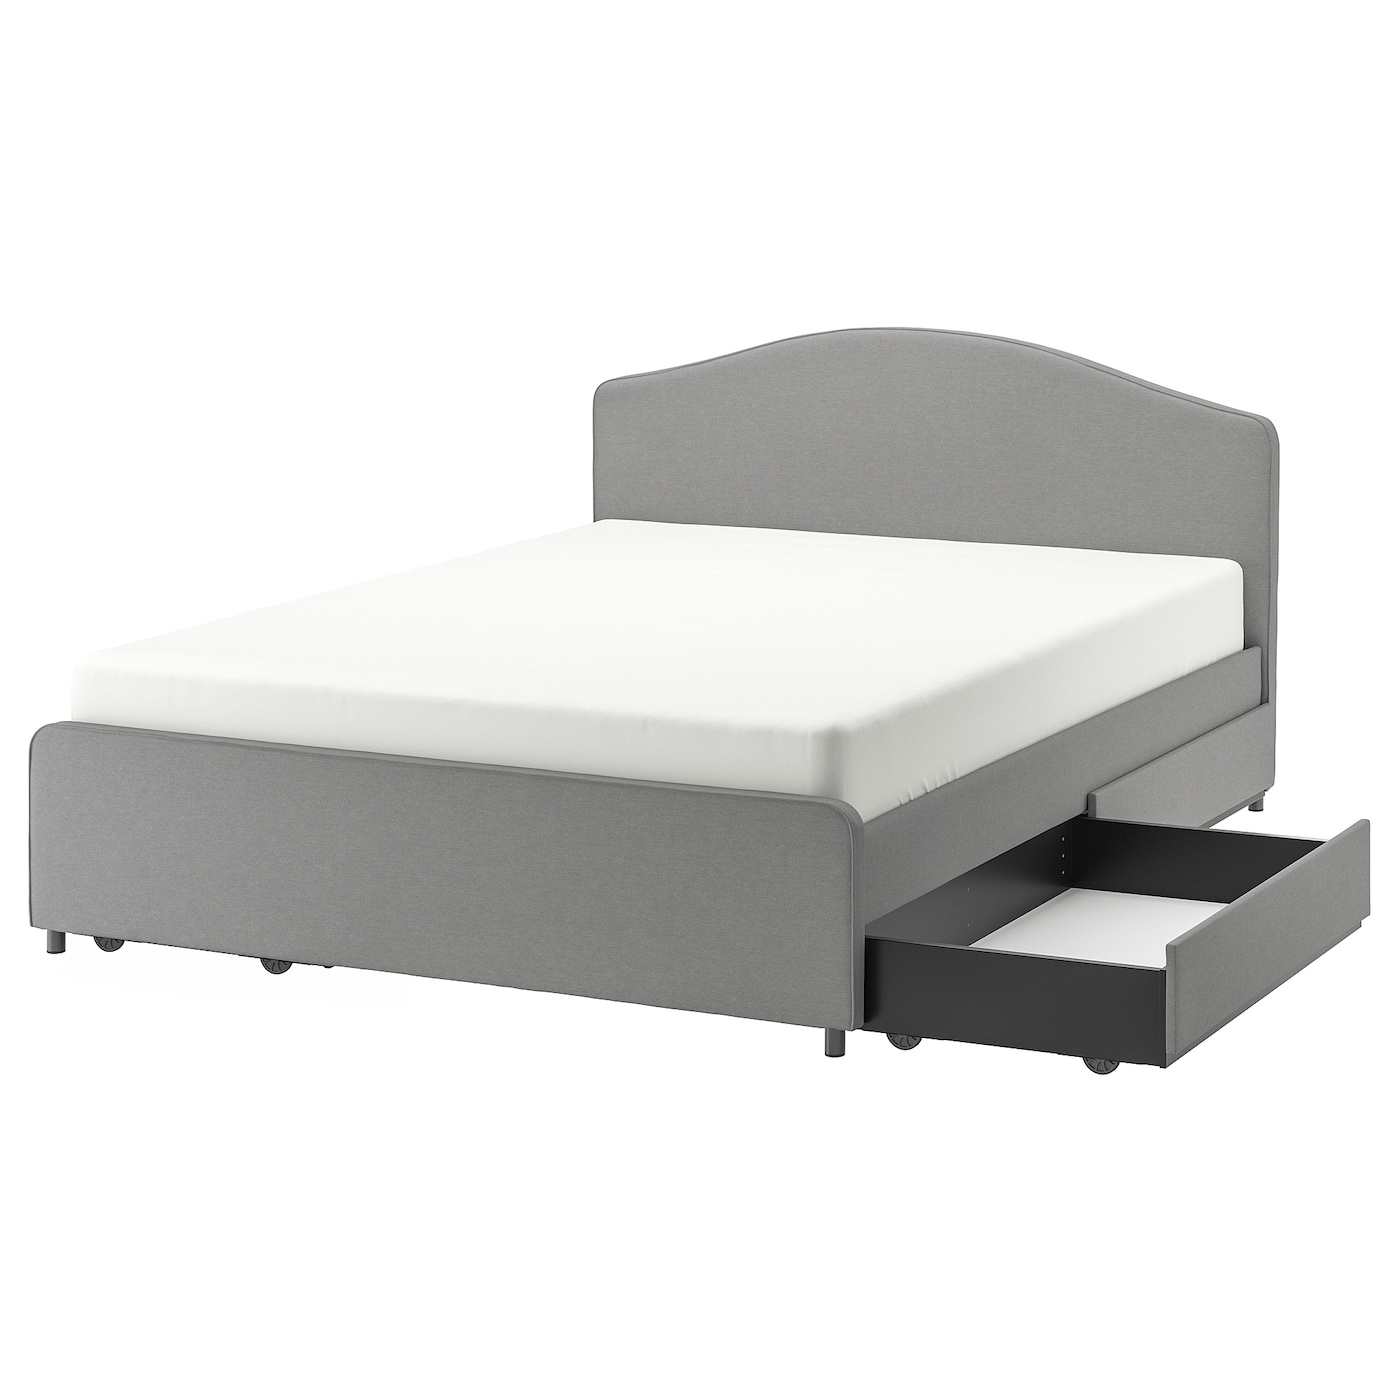 HAUGA 豪嘉软包床架含4个储物盒威索尔灰色- IKEA